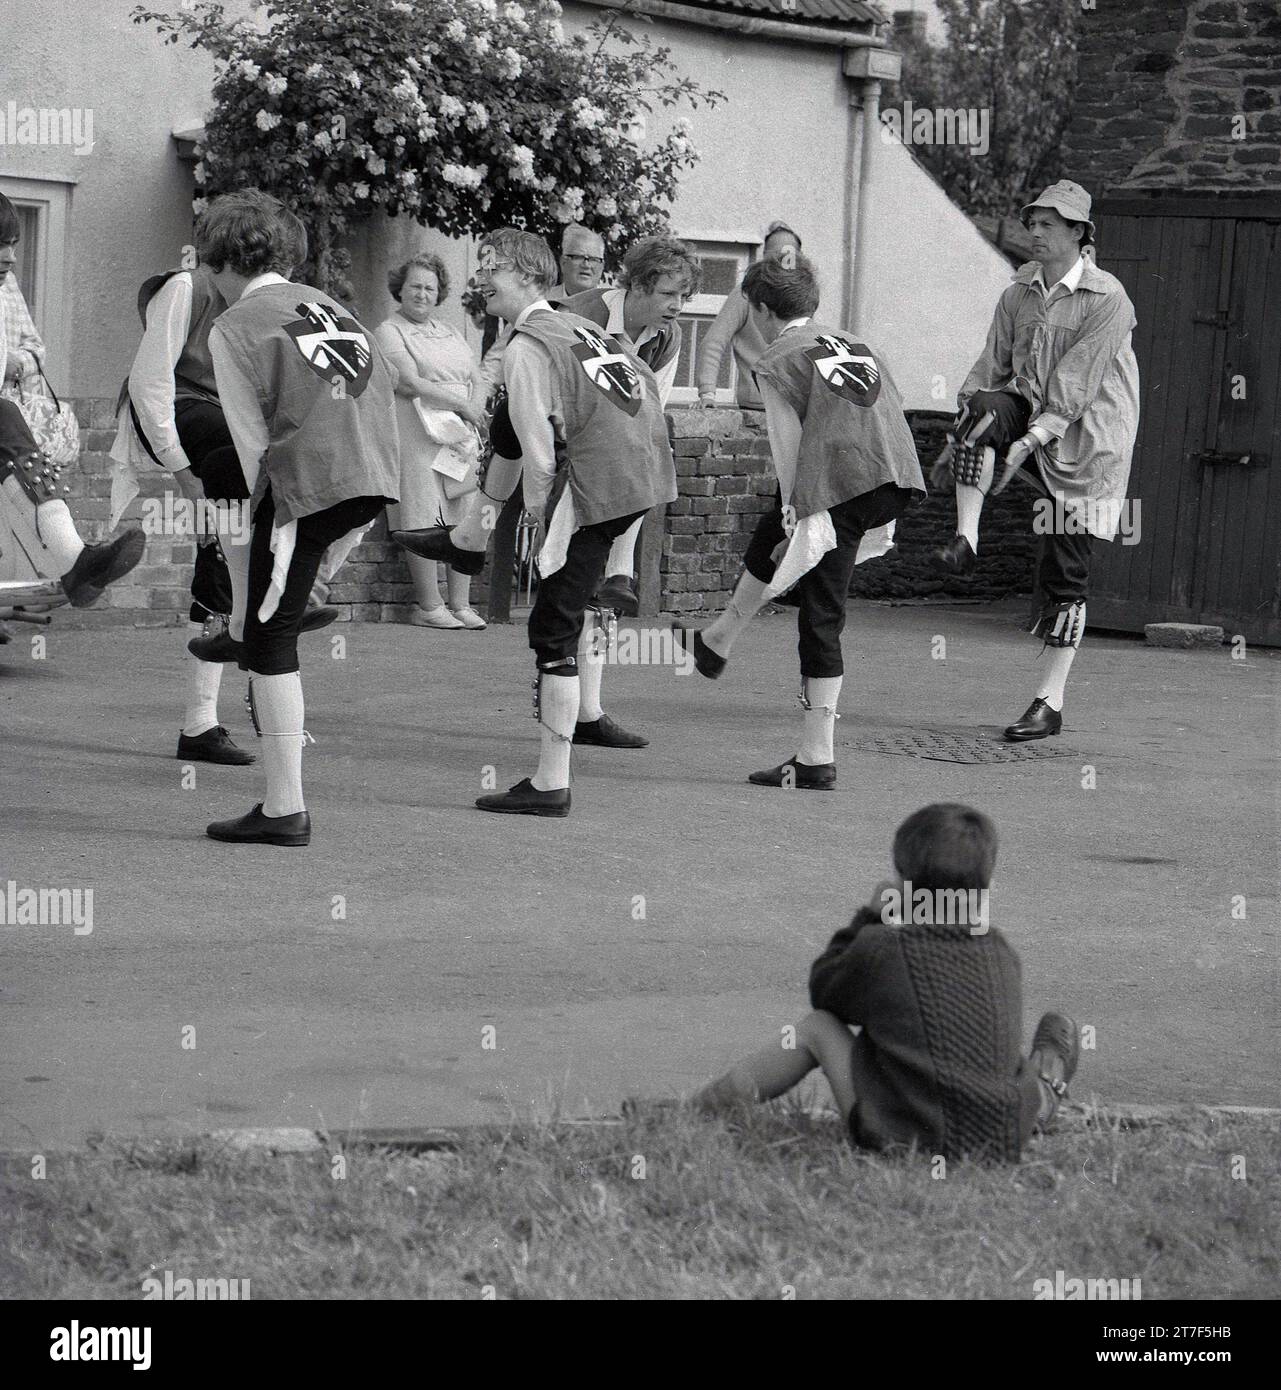 Années 1970, historlcal, un petit garçon assis regardant des hommes adultes et des jeunes hommes vêtus de costumes faisant une danse morris, Angleterre, Royaume-Uni. La danse Morris est une forme populaire de danse folklorique anglaise jouée lors de festivals et de vacances pour célébrer l'arrivée de l'été et la récolte d'or de l'automne. Banque D'Images